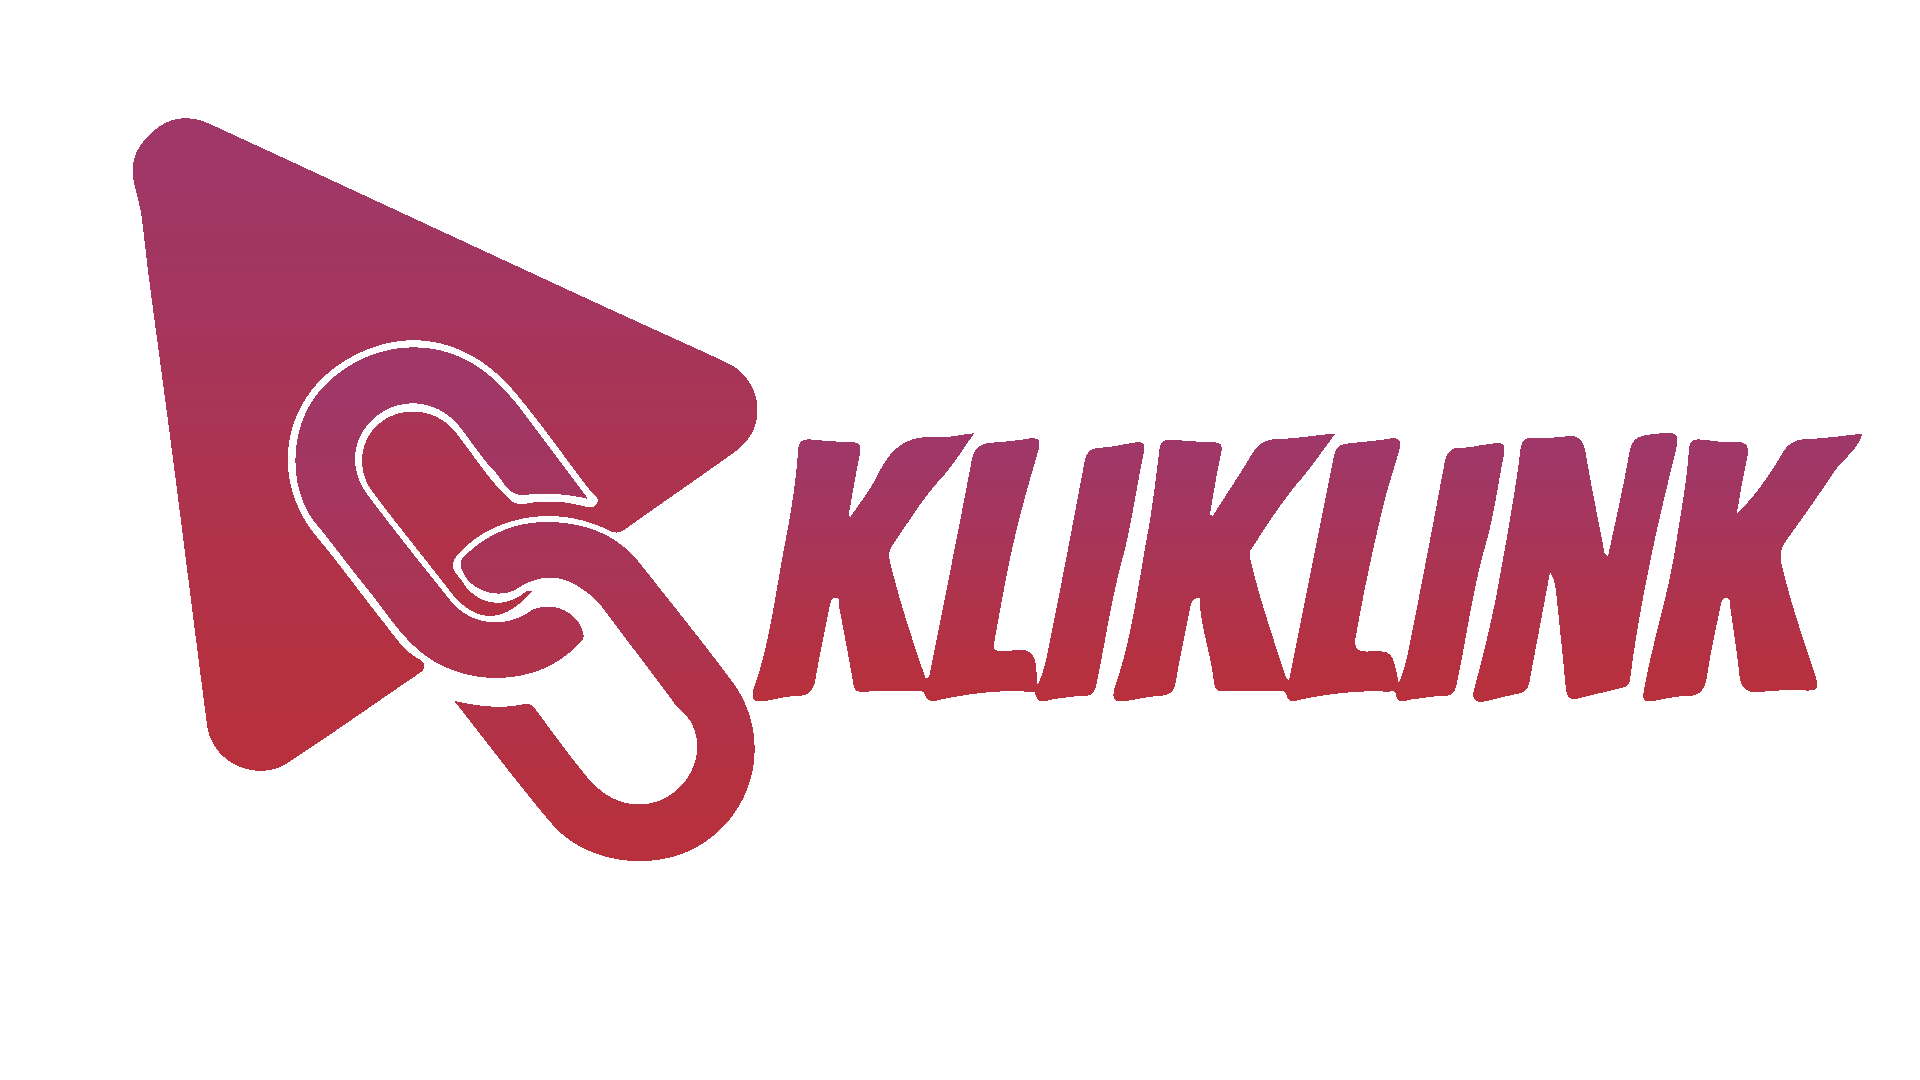 With ❤ by KlikLink